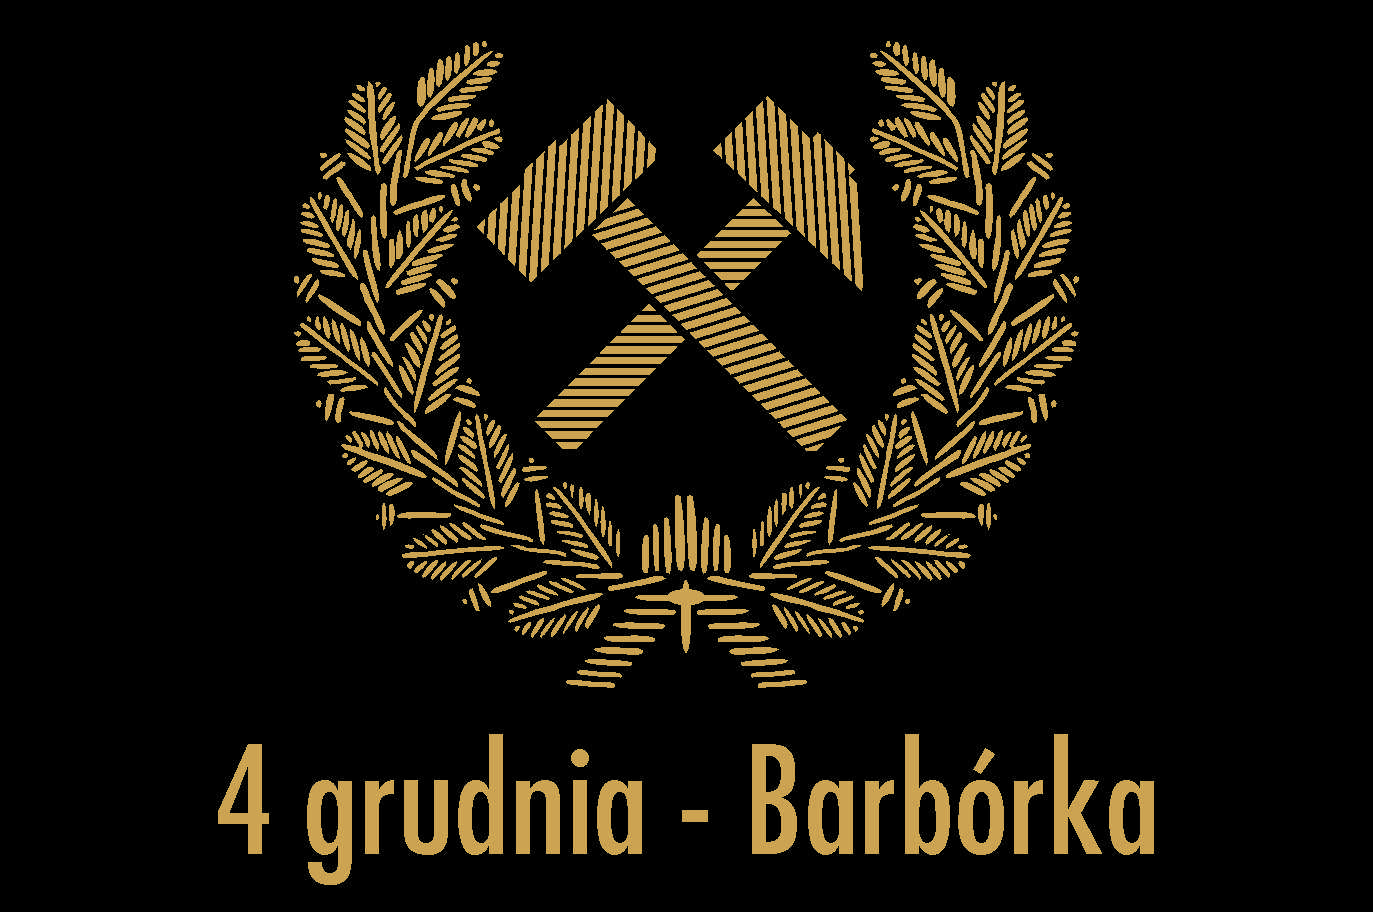 Barbórka